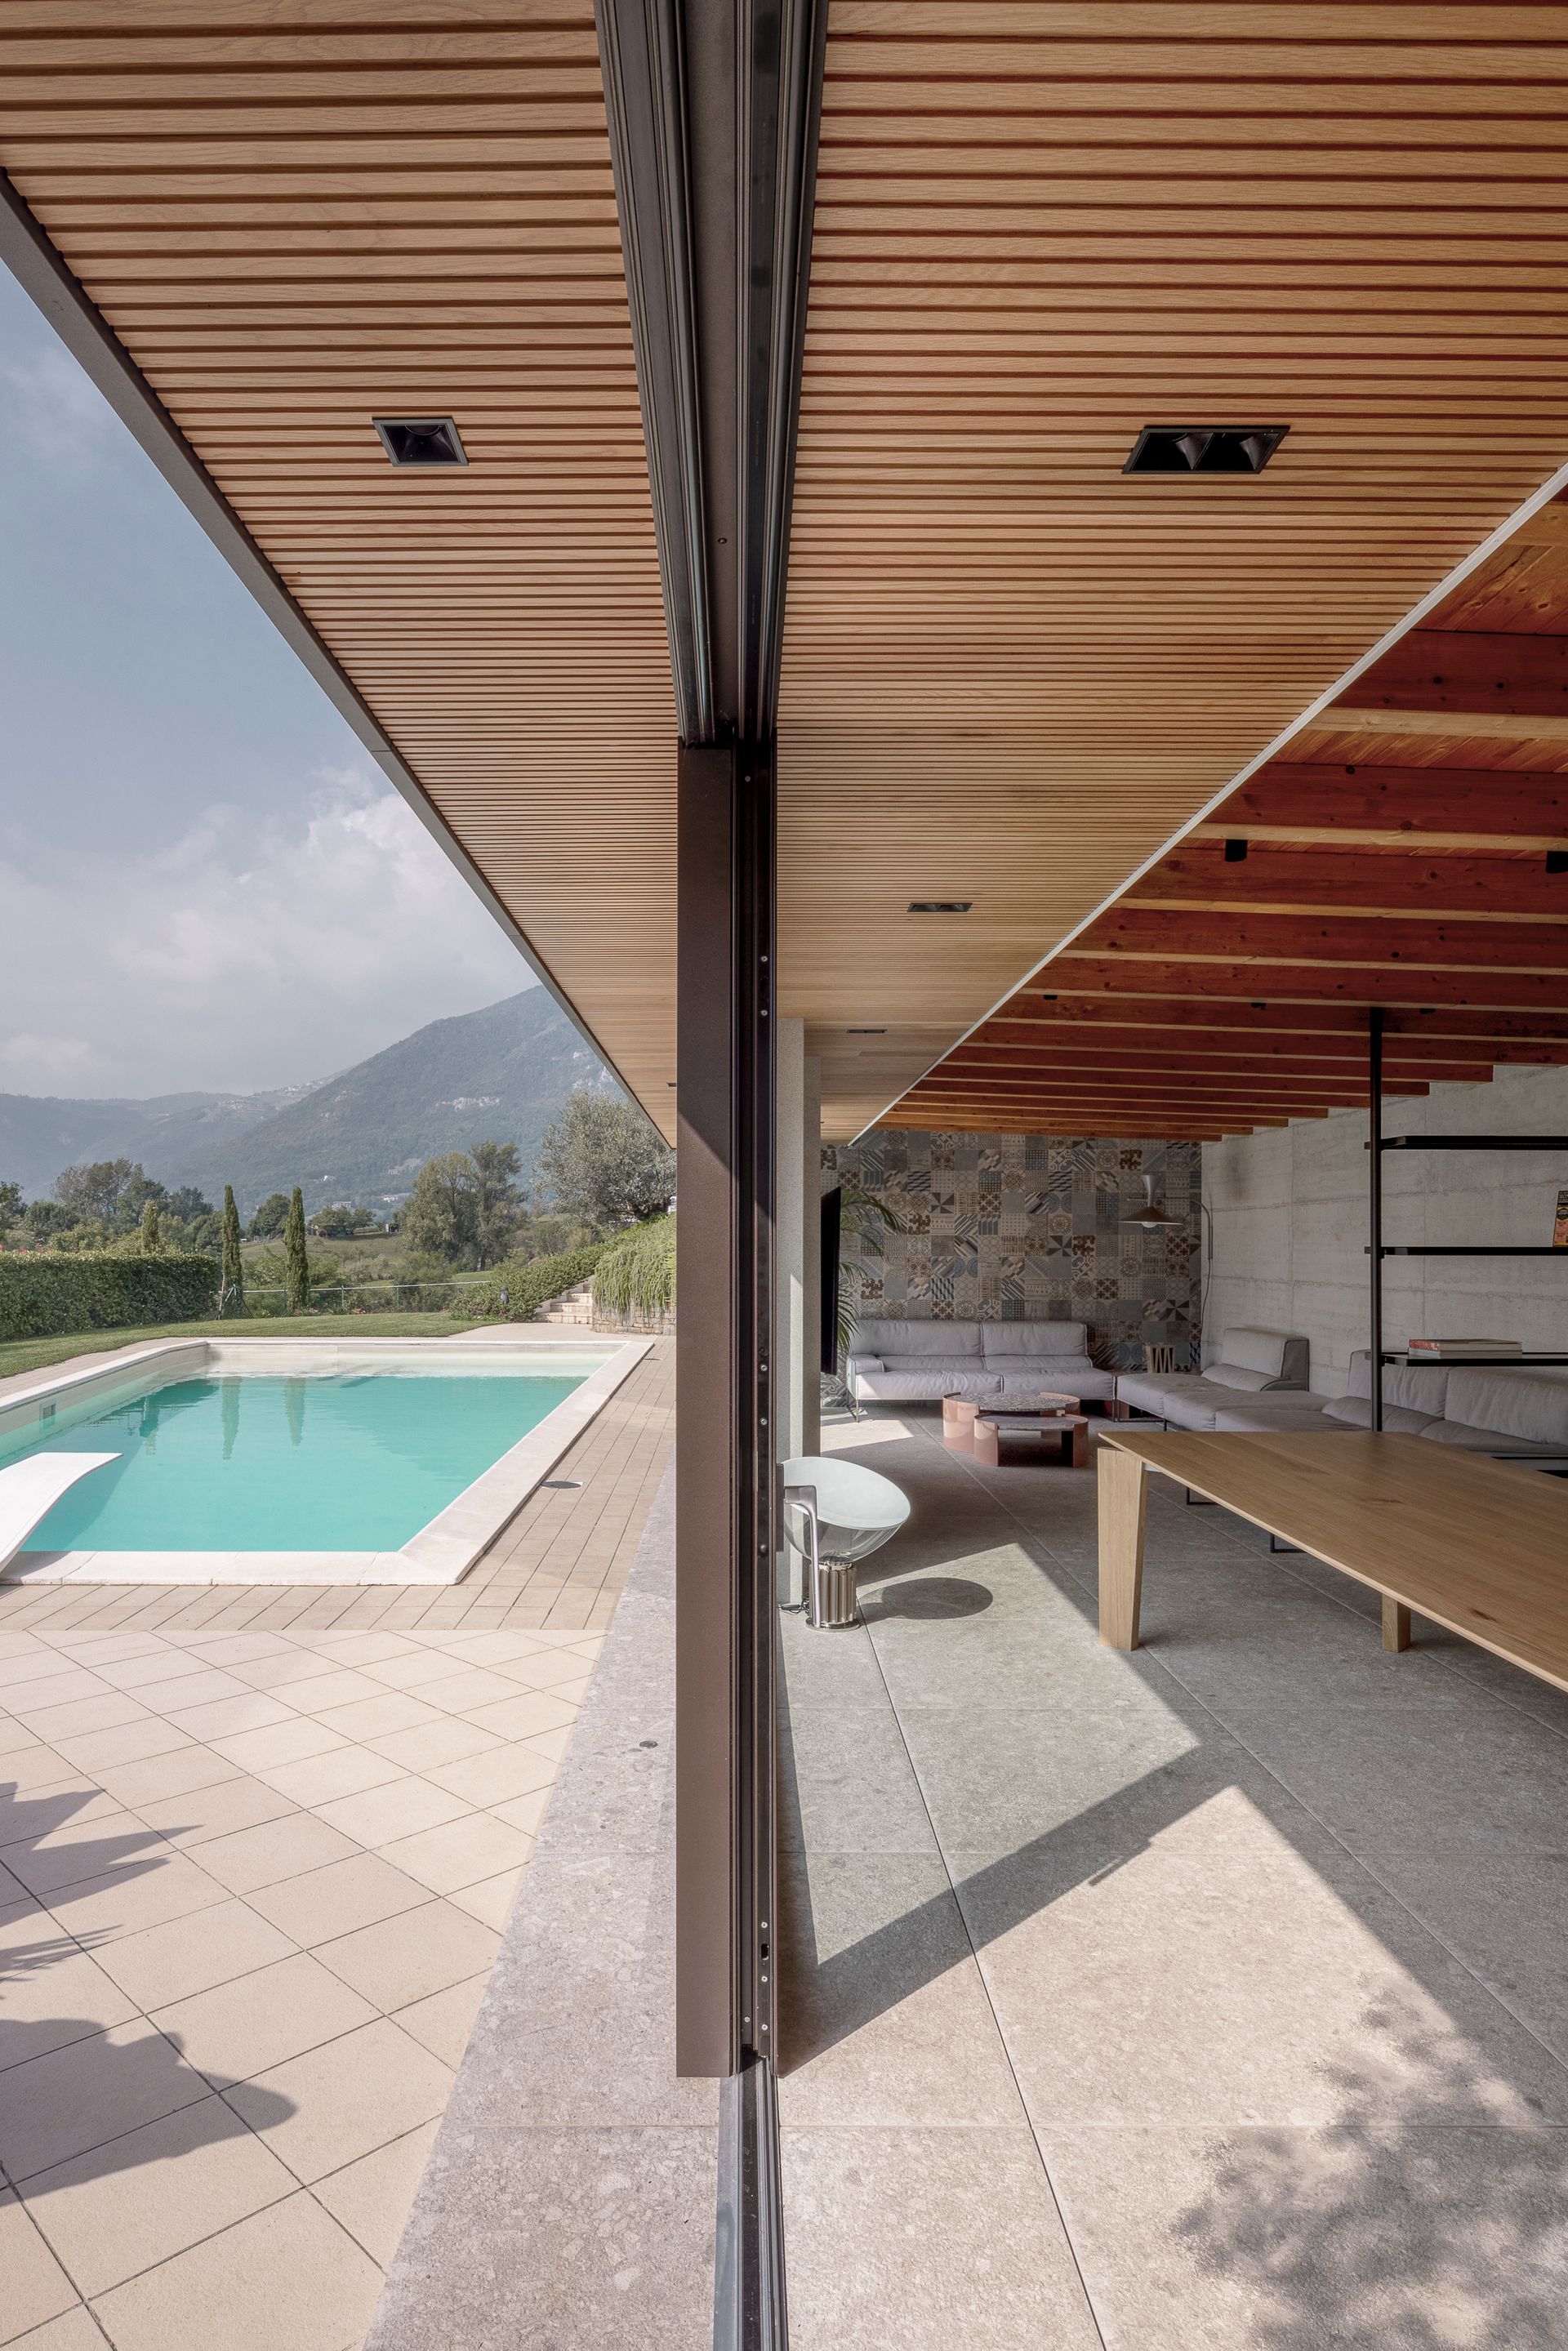 Progetto esterni con piscina, vetrate continue filo pavimento orobie vista panoramica. Officina Magisafi architettura design - dentro fuori